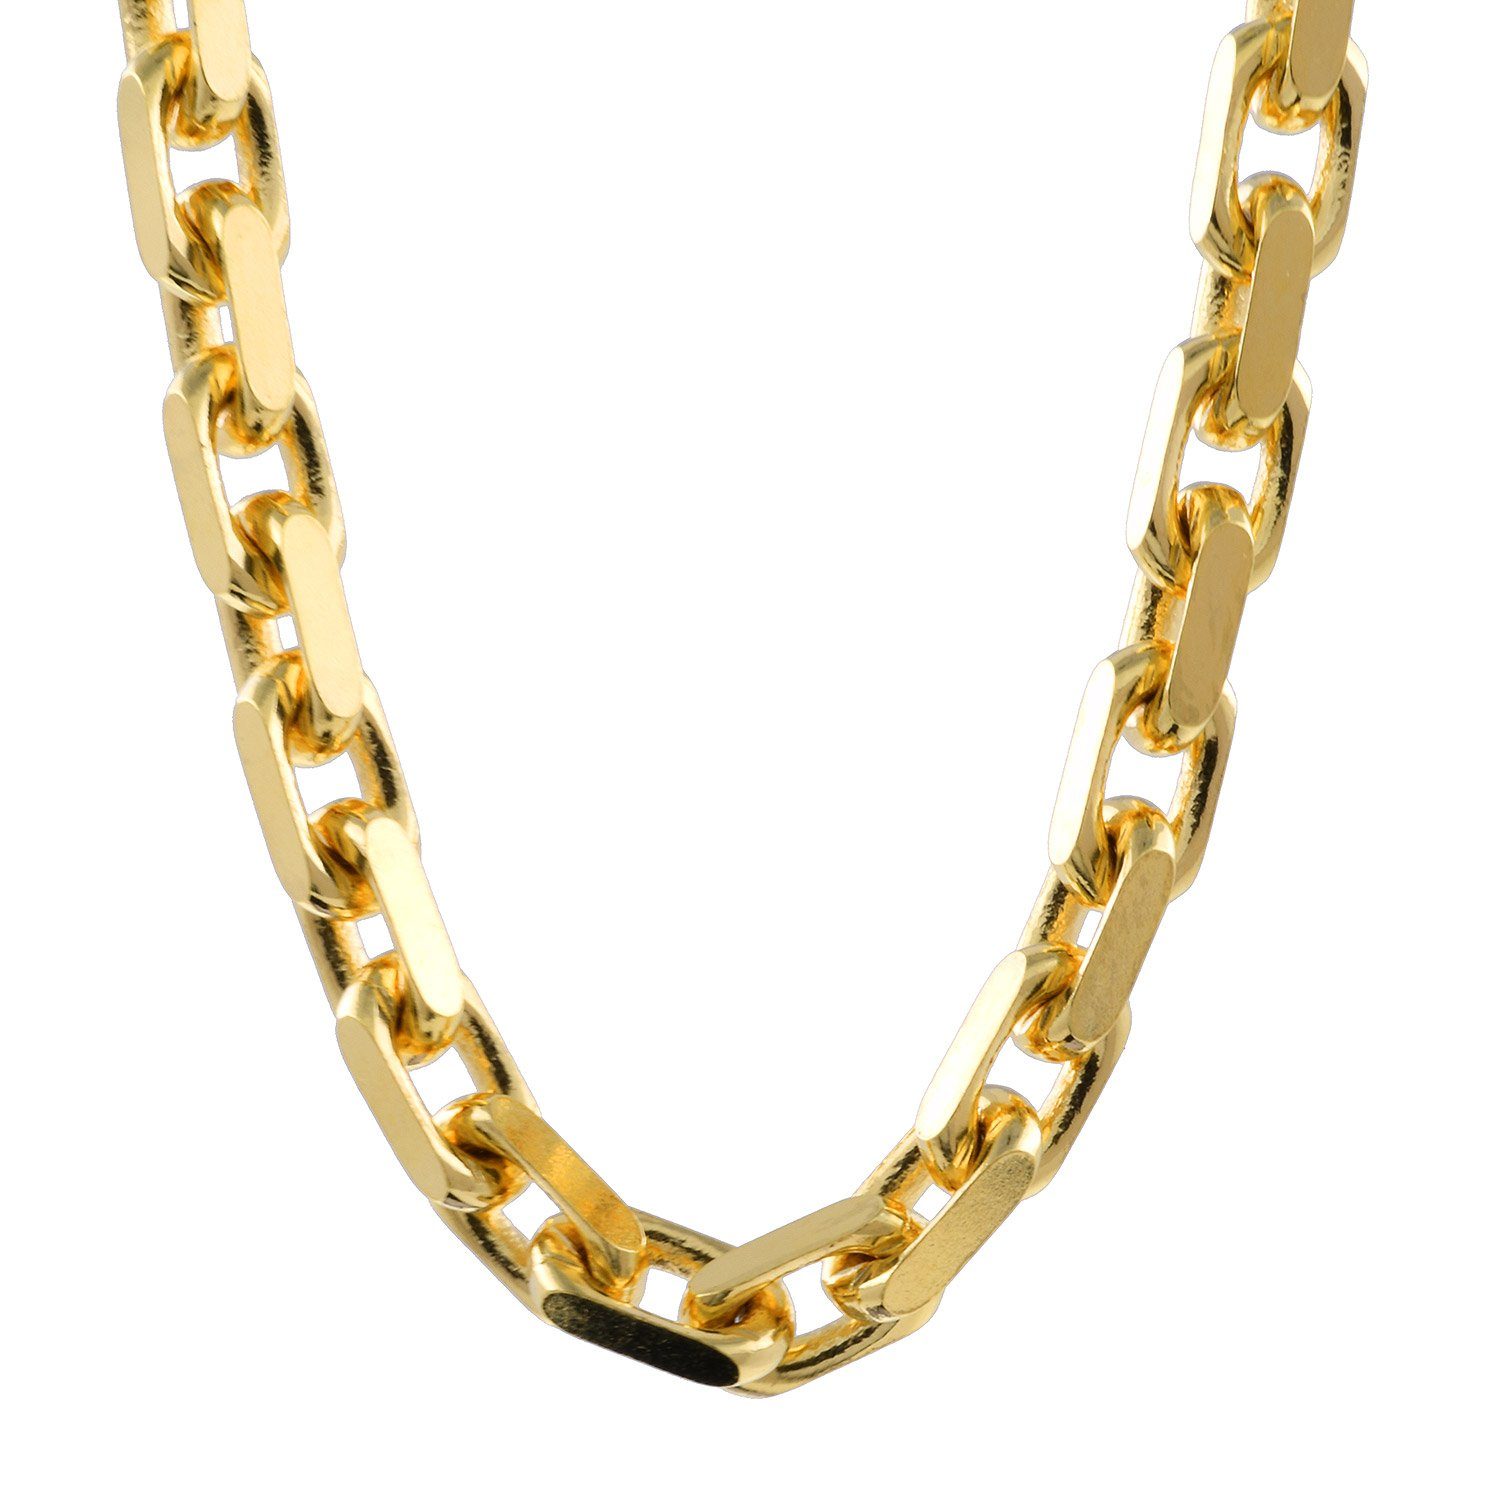 HOPLO Goldkette Ankerkette diamantiert Länge 60cm - Breite 4,0mm - 750-18 Karat Gold, Made in Germany